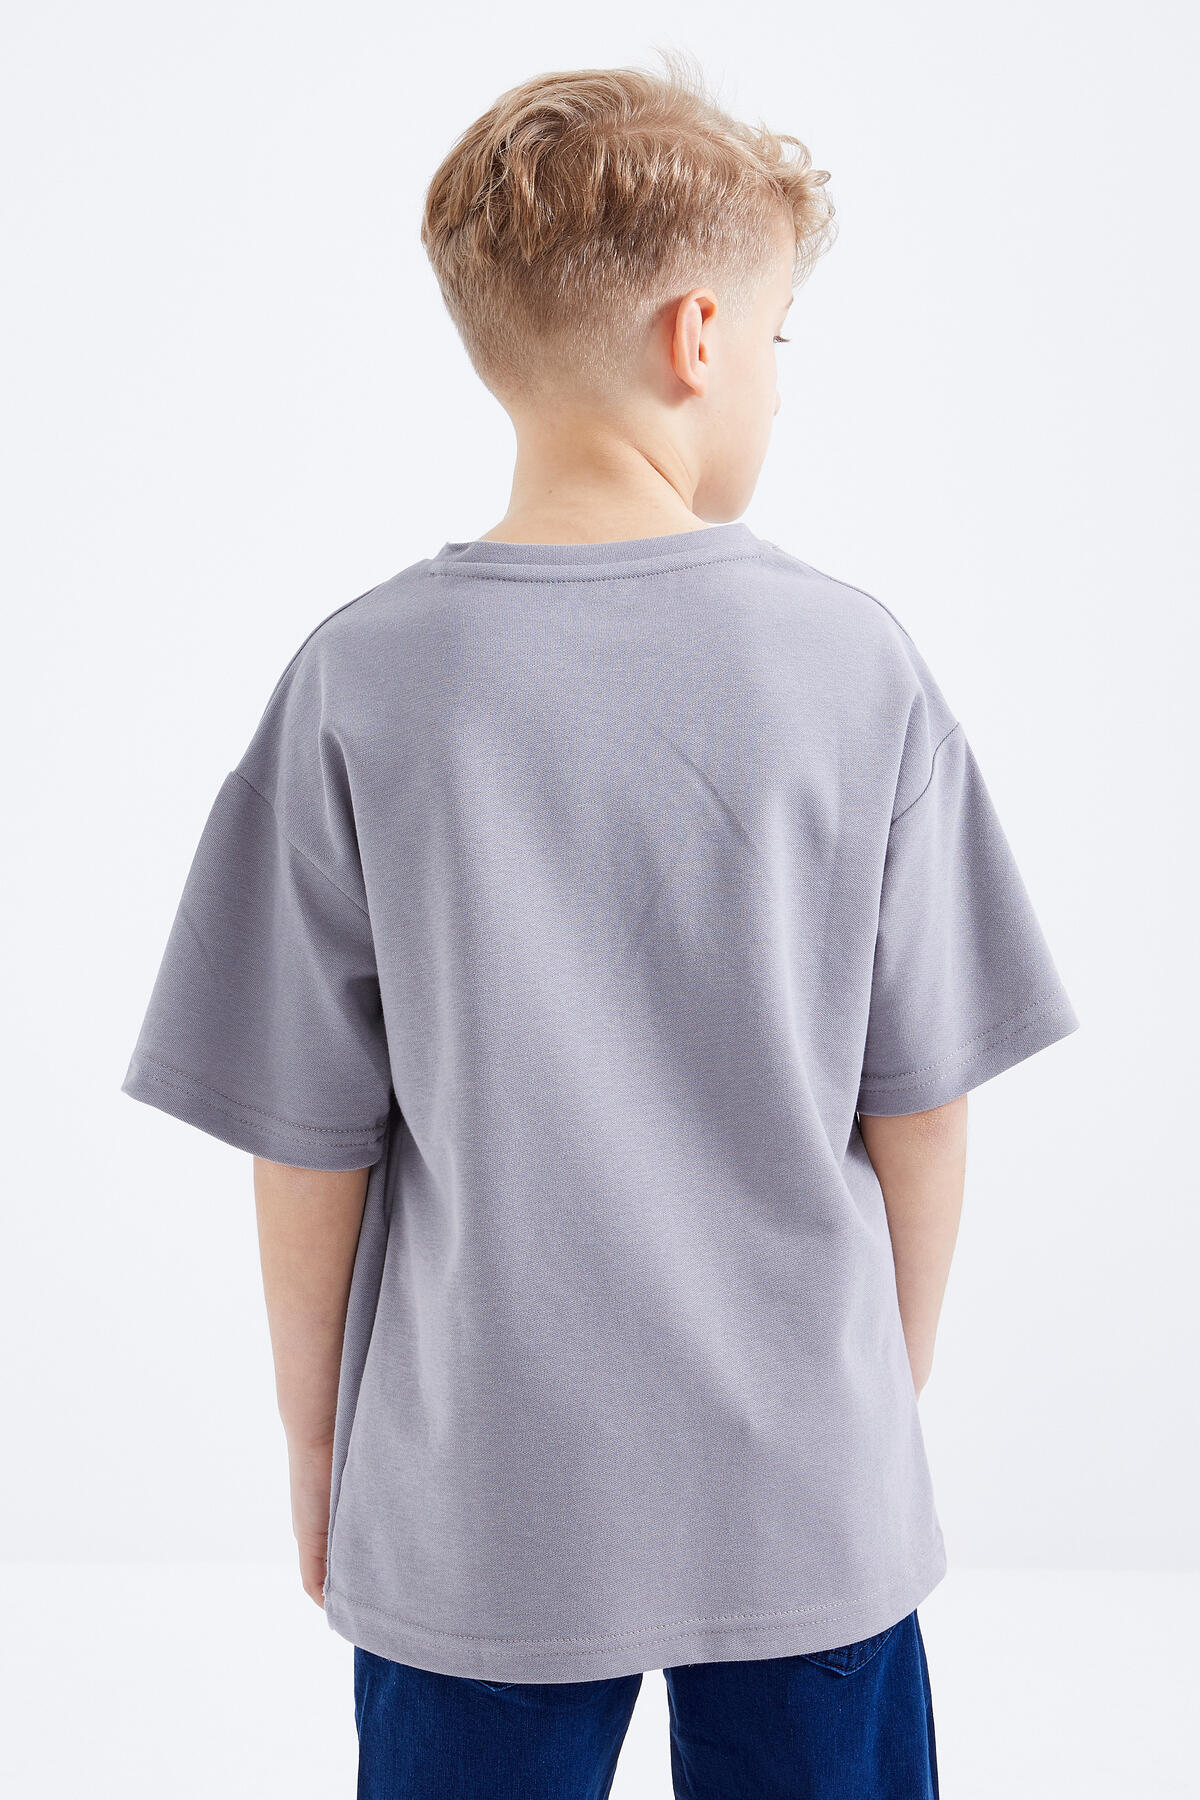 Gri Baskılı Kısa Kollu O Yaka Erkek Çocuk T-Shirt - 10912